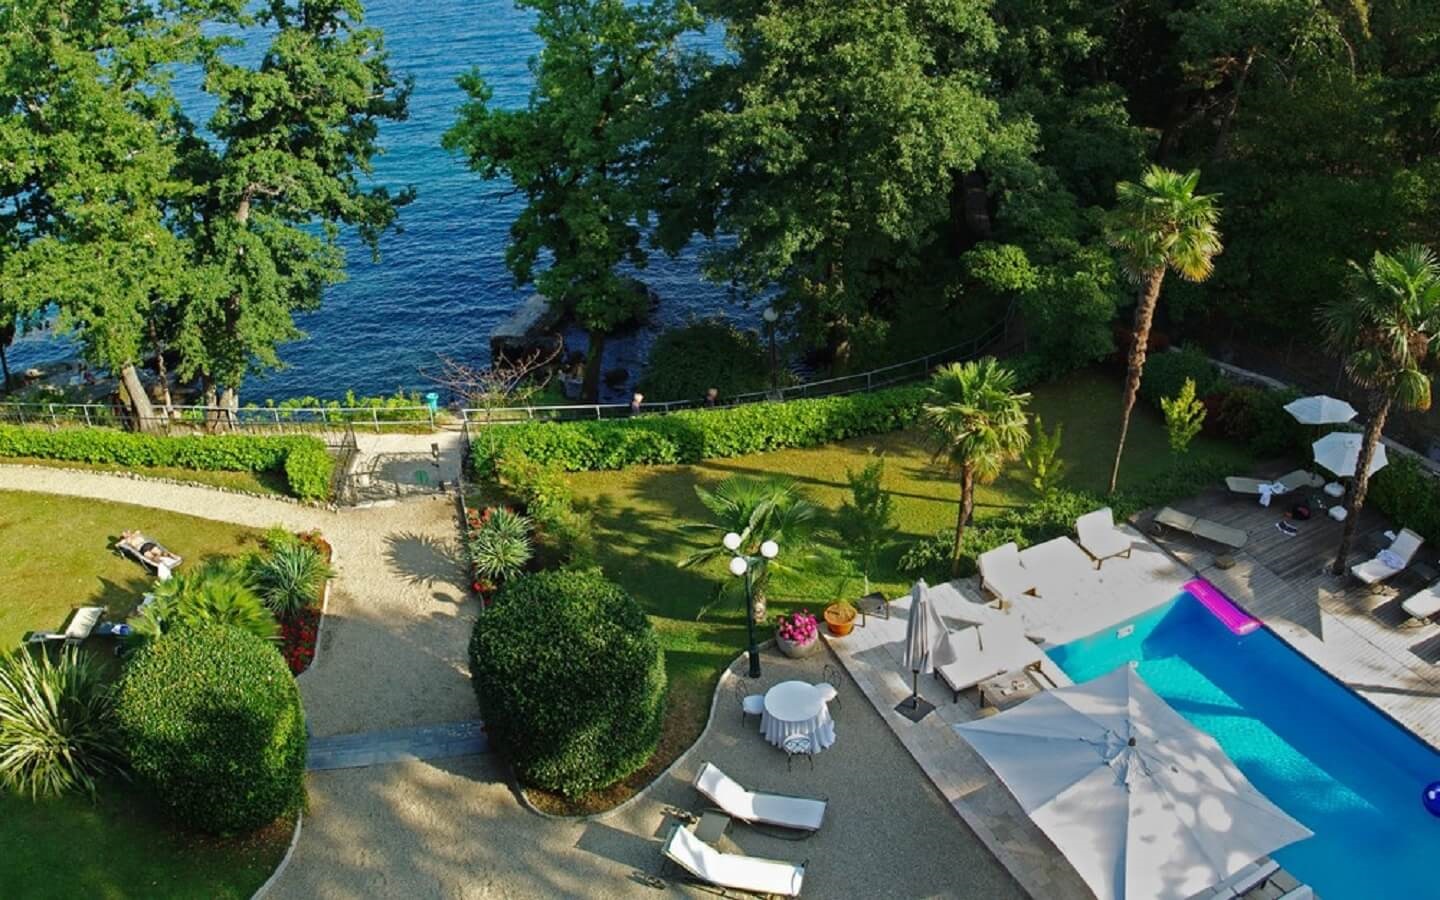 Hotel Villa Astra, direkt am Meer in Lovran, Kvarner Riviera, Kroatien.